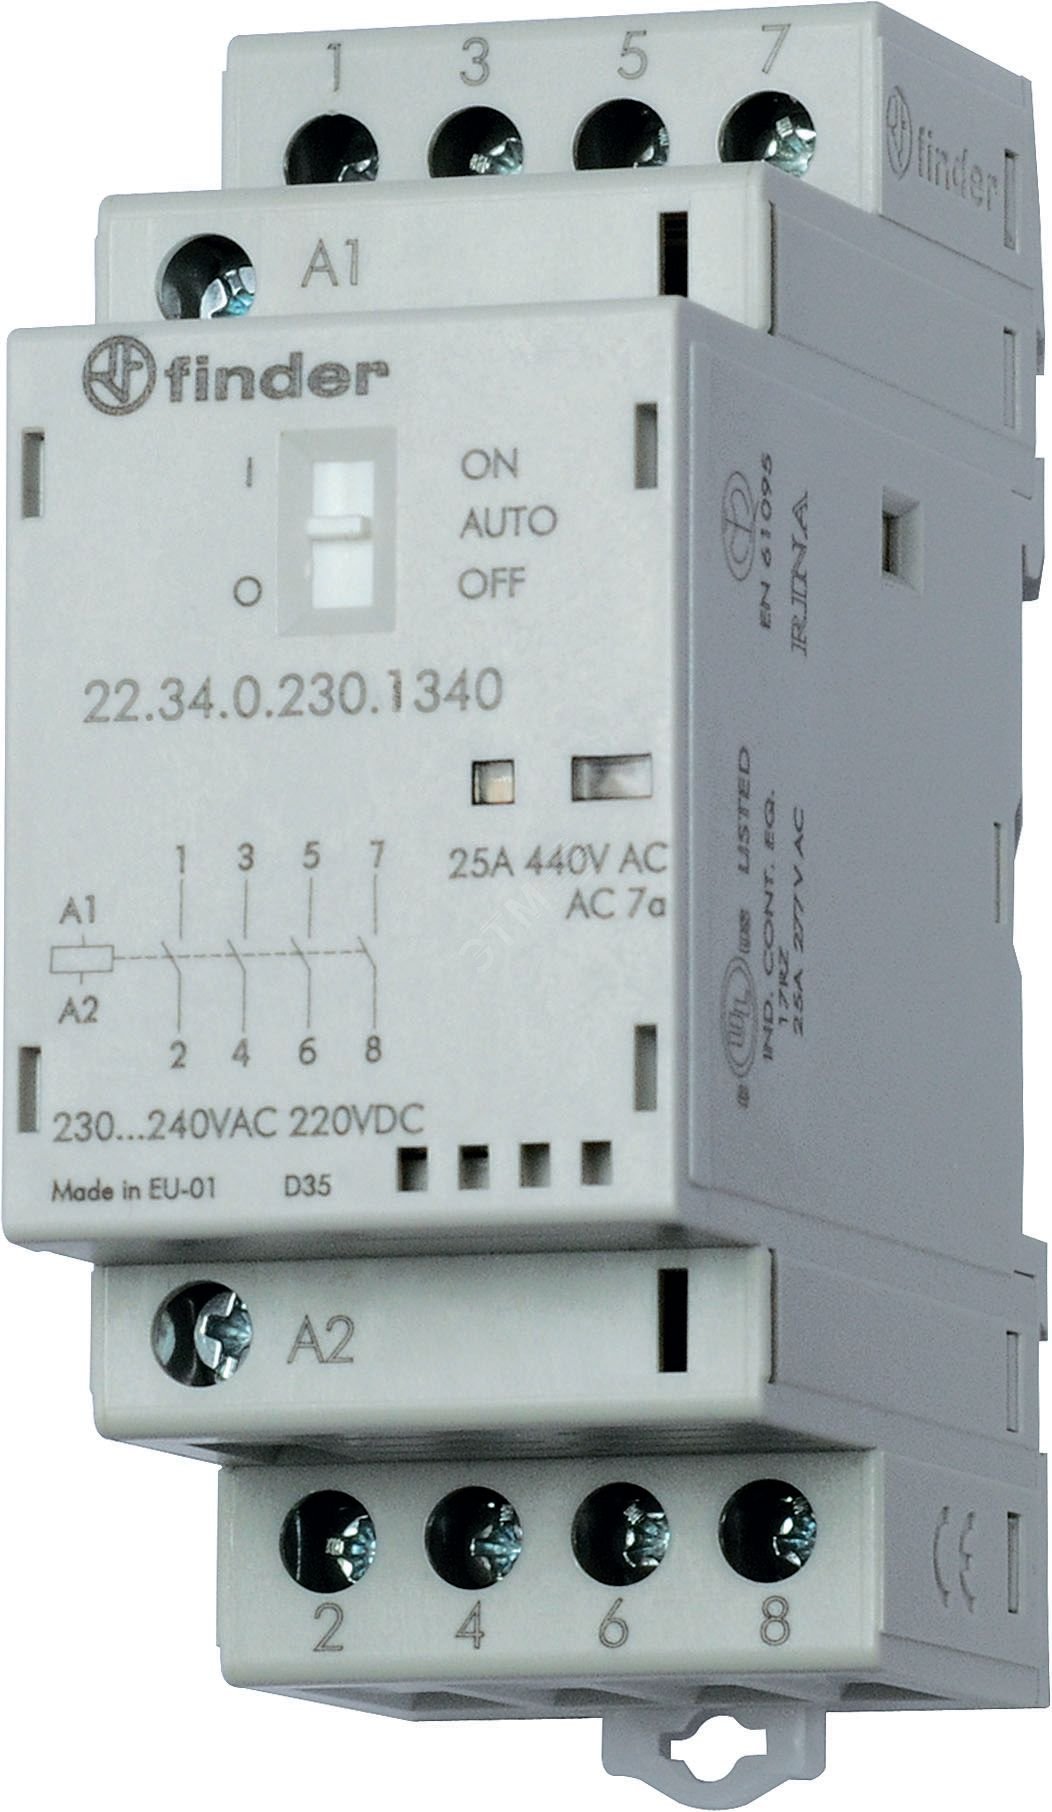 Контактор модульный 3NO+1NC 25А контакты AgSnO2 катушка 230В АС/DC 35мм IP20 переключатель Авто-Вкл-Выкл+механический индикатор/LED 22.34.0.230.4740 FINDER - превью 2